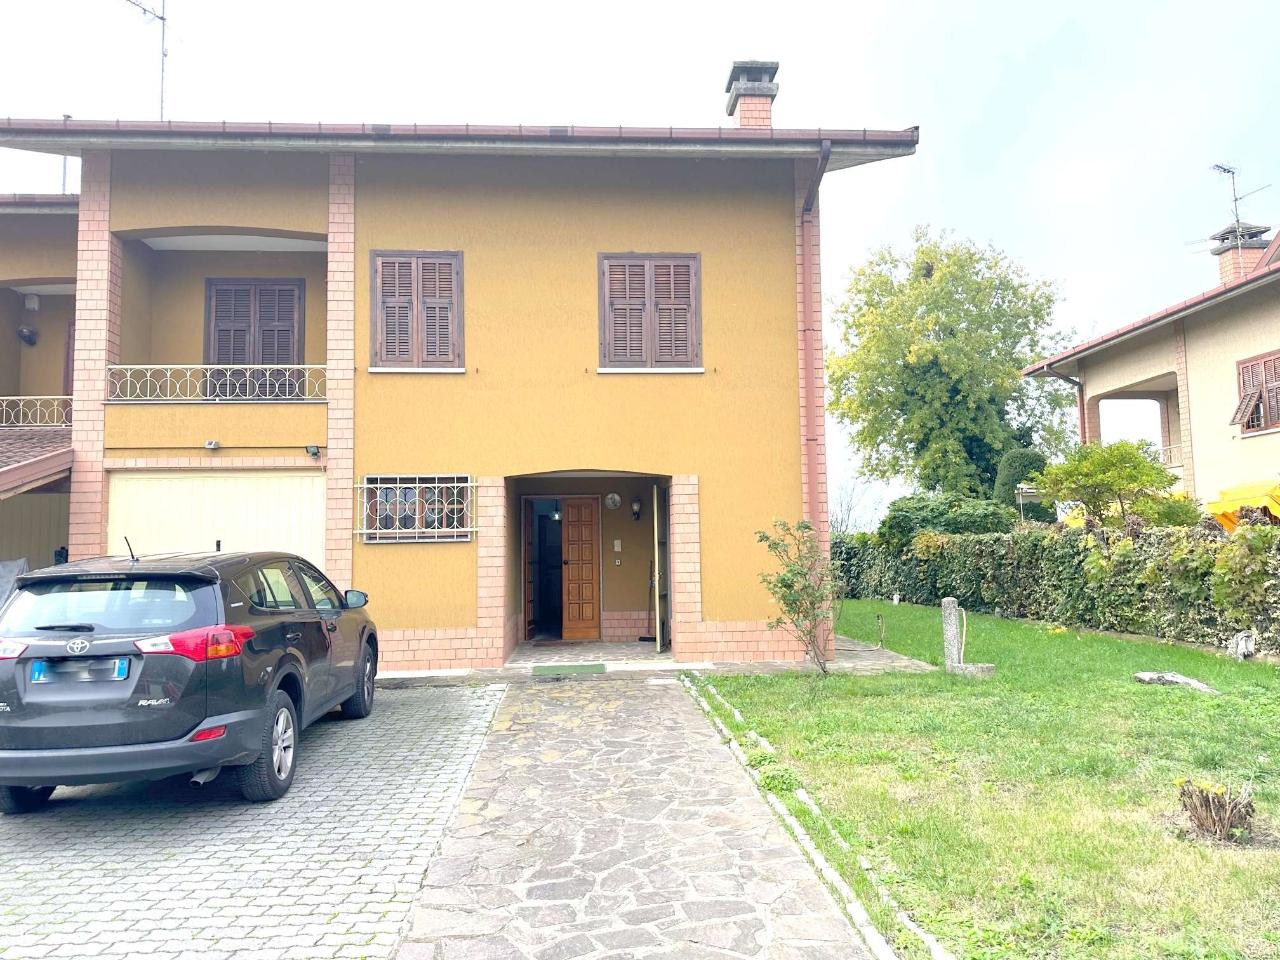 Villa unifamiliare in vendita a Basaluzzo